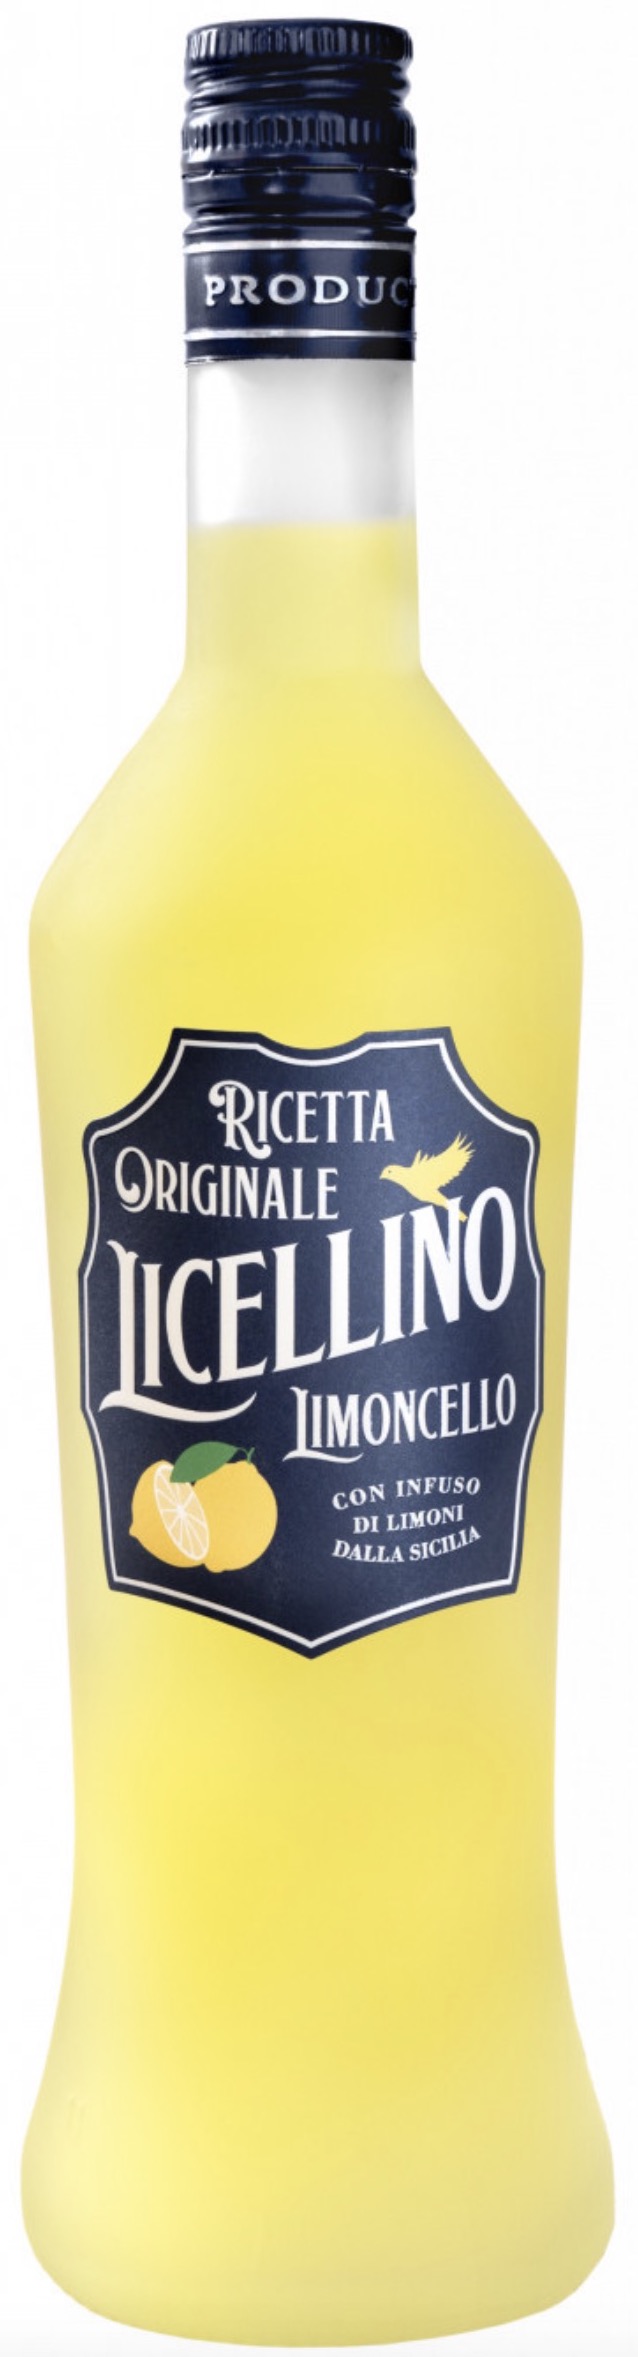 Licellino Limoncello Ricetta Originale 28% vol. 0,7L